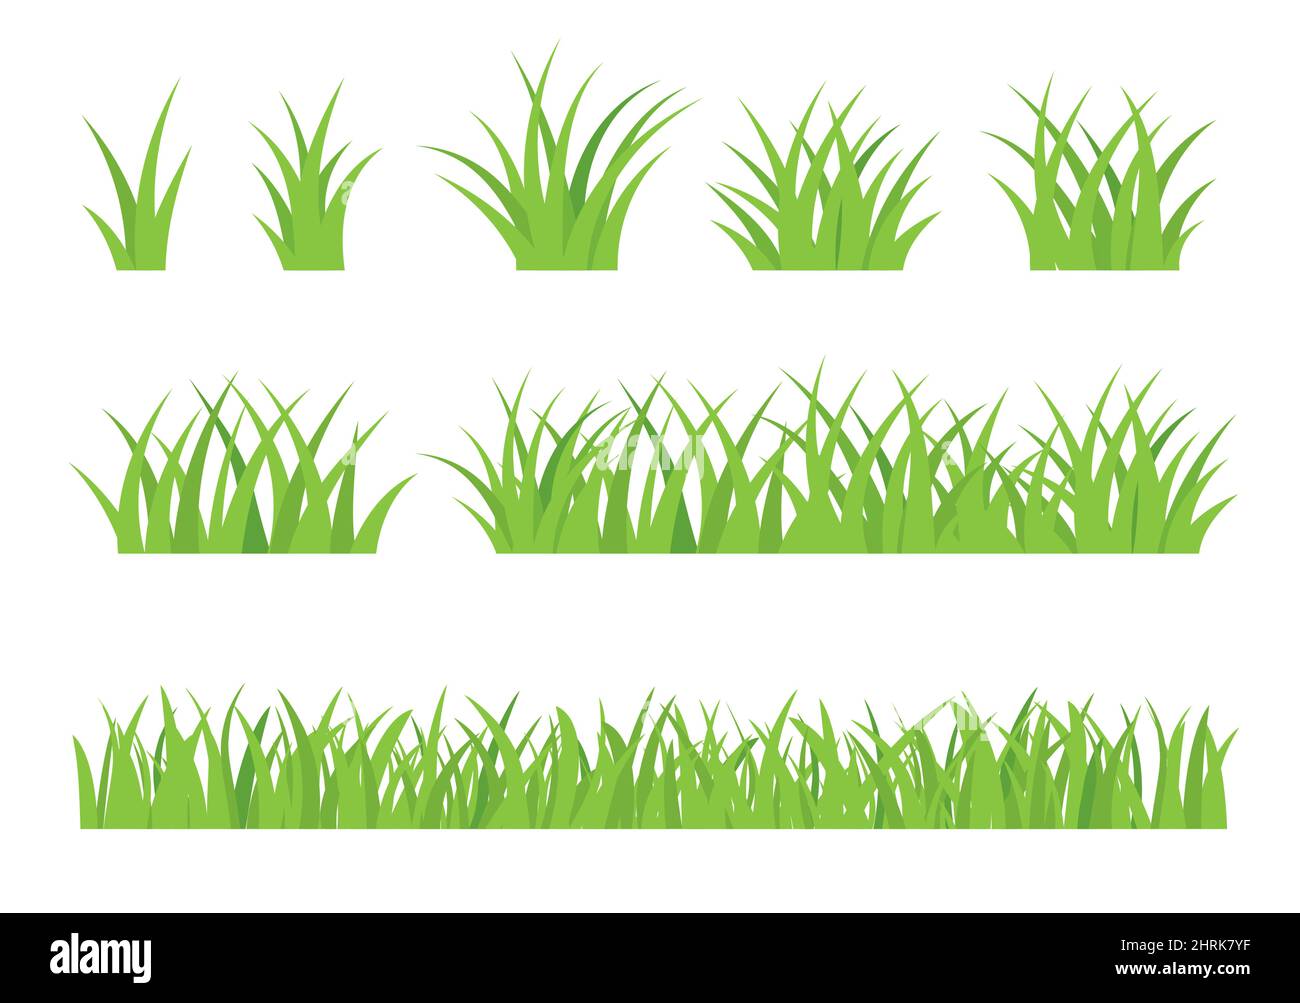 Frühling grünes Gras isoliert auf weißem Hintergrund. Grasränder gesetzt. Stock Vektor